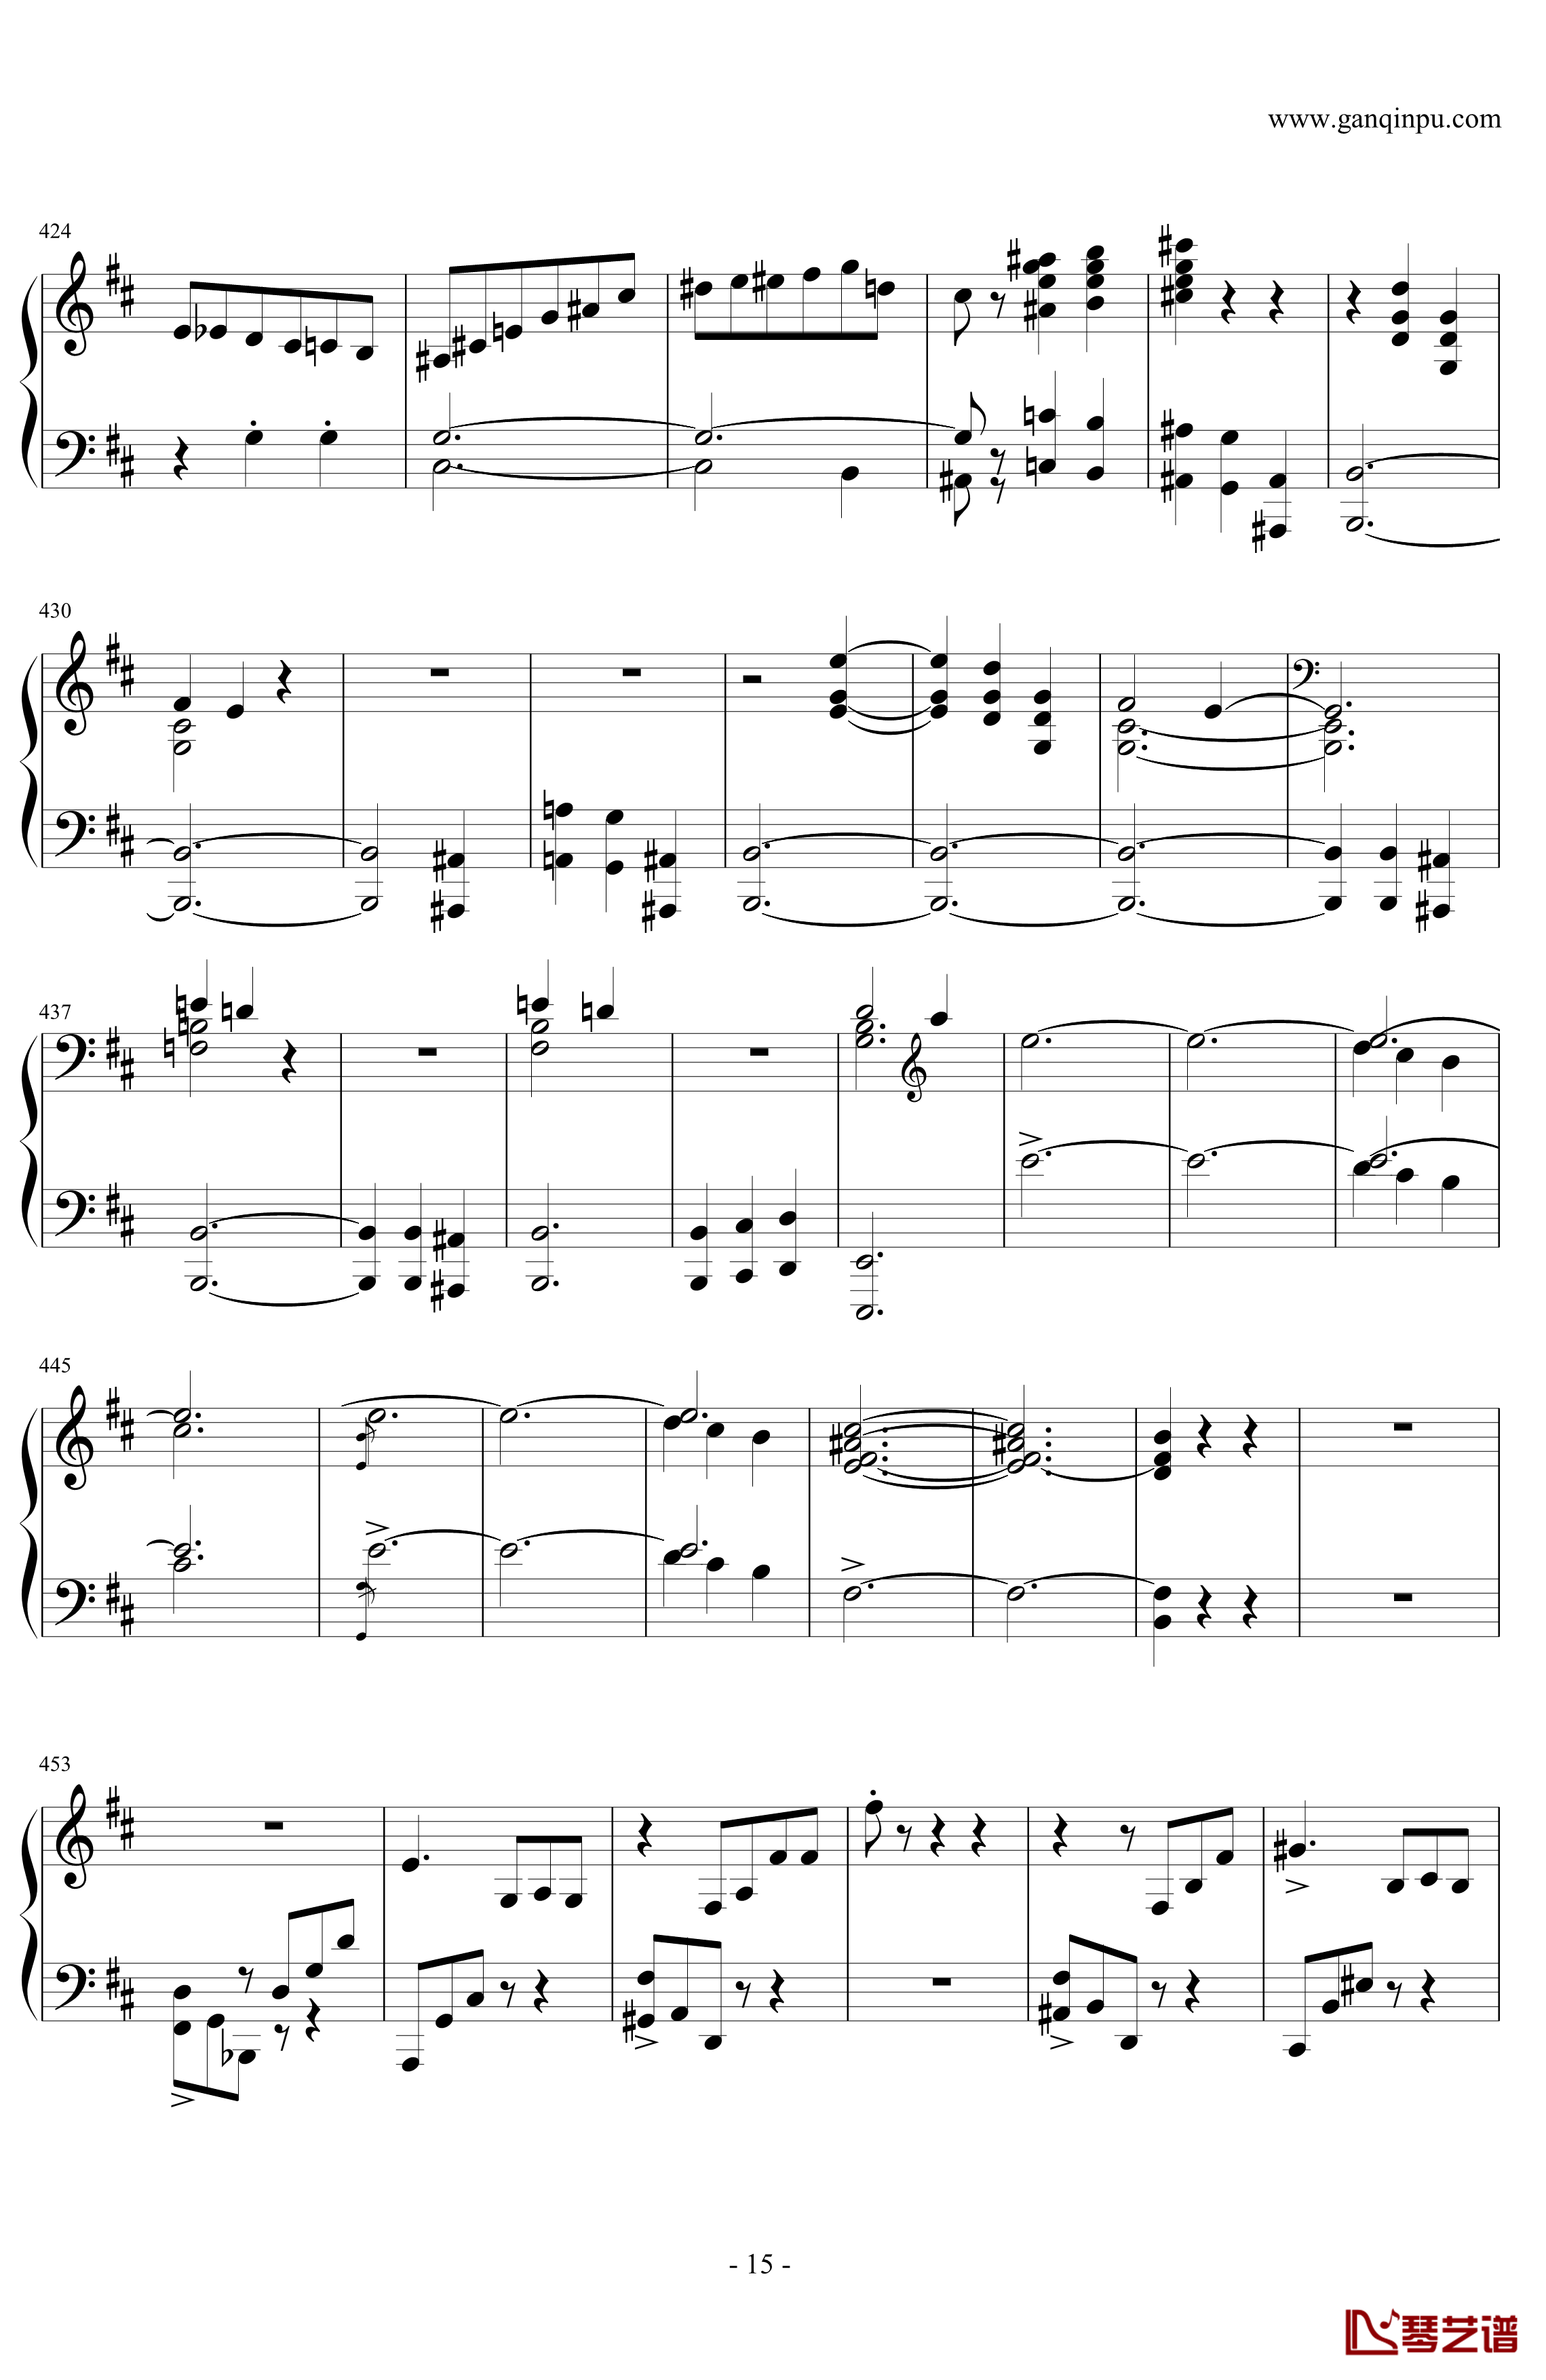 肖邦第一谐谑曲钢琴谱-肖邦-chopin15